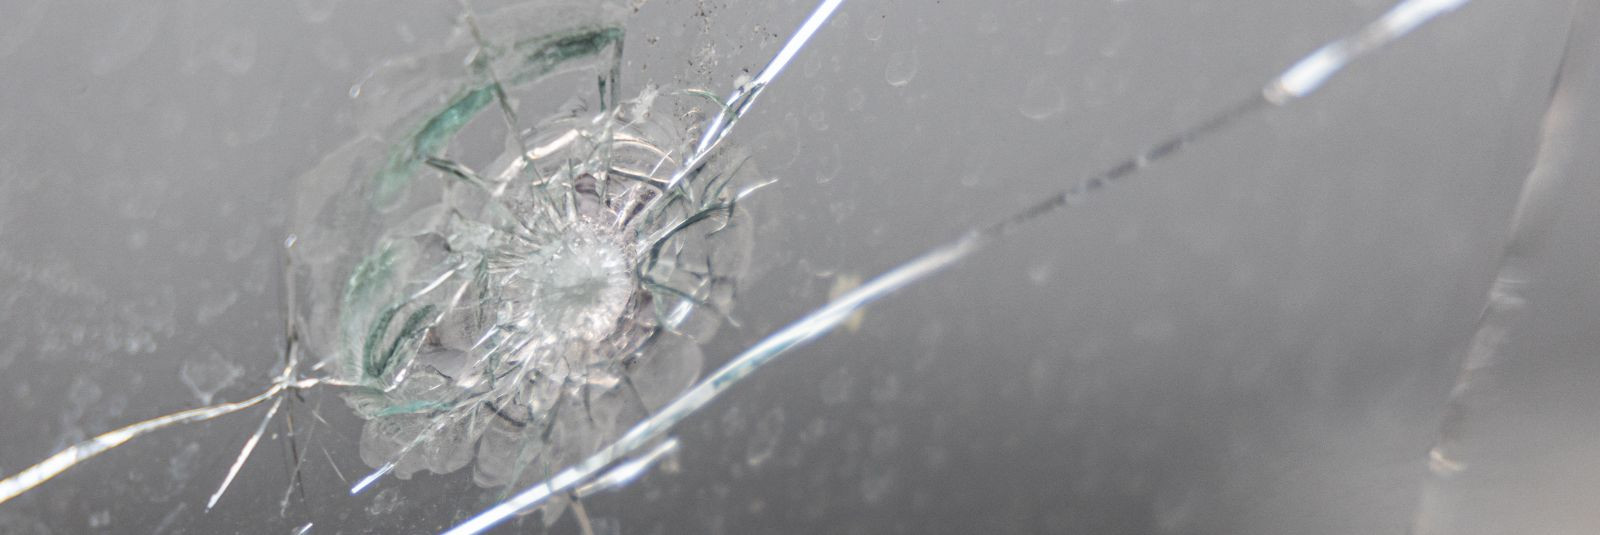 Kui te olete kunagi sattunud olukorda, kus auto klaasile ilmub väike kivitäke, võib esimene reaktsioon olla kerge mure. Kuigi see võib esmapilgul tunduda väikes